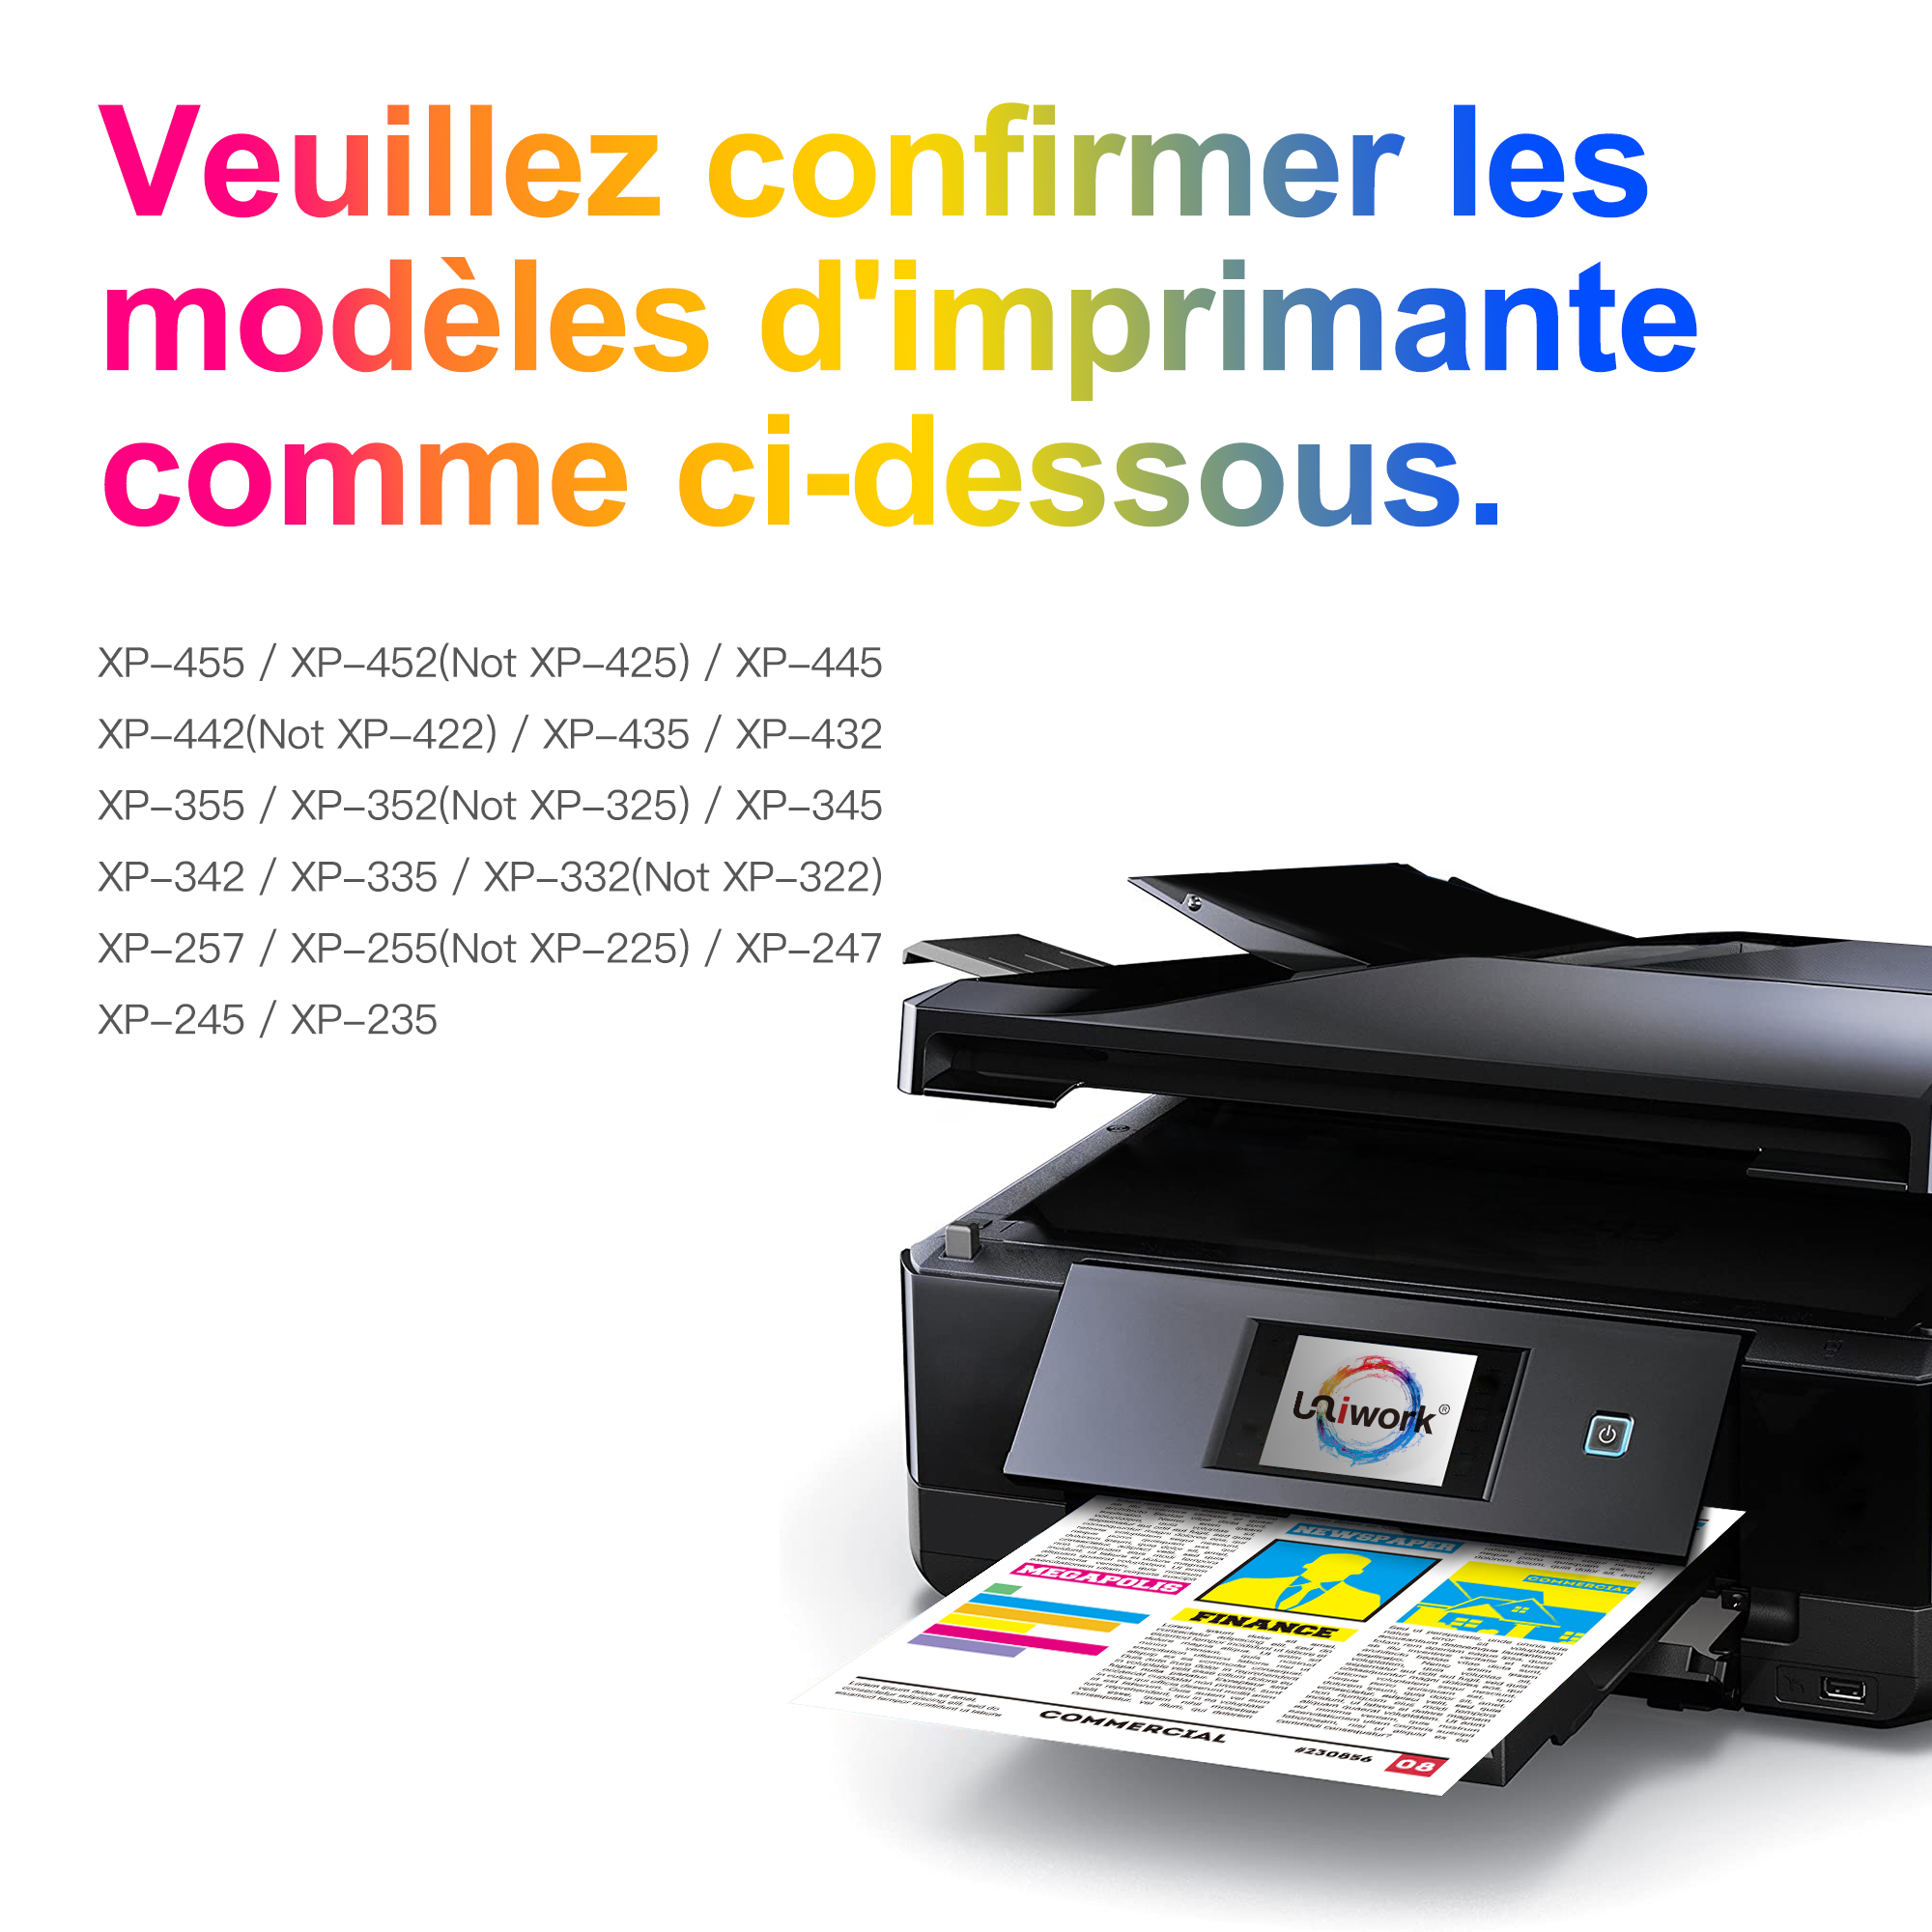 KJvjZcwTwhD_打印机-法语.jpg